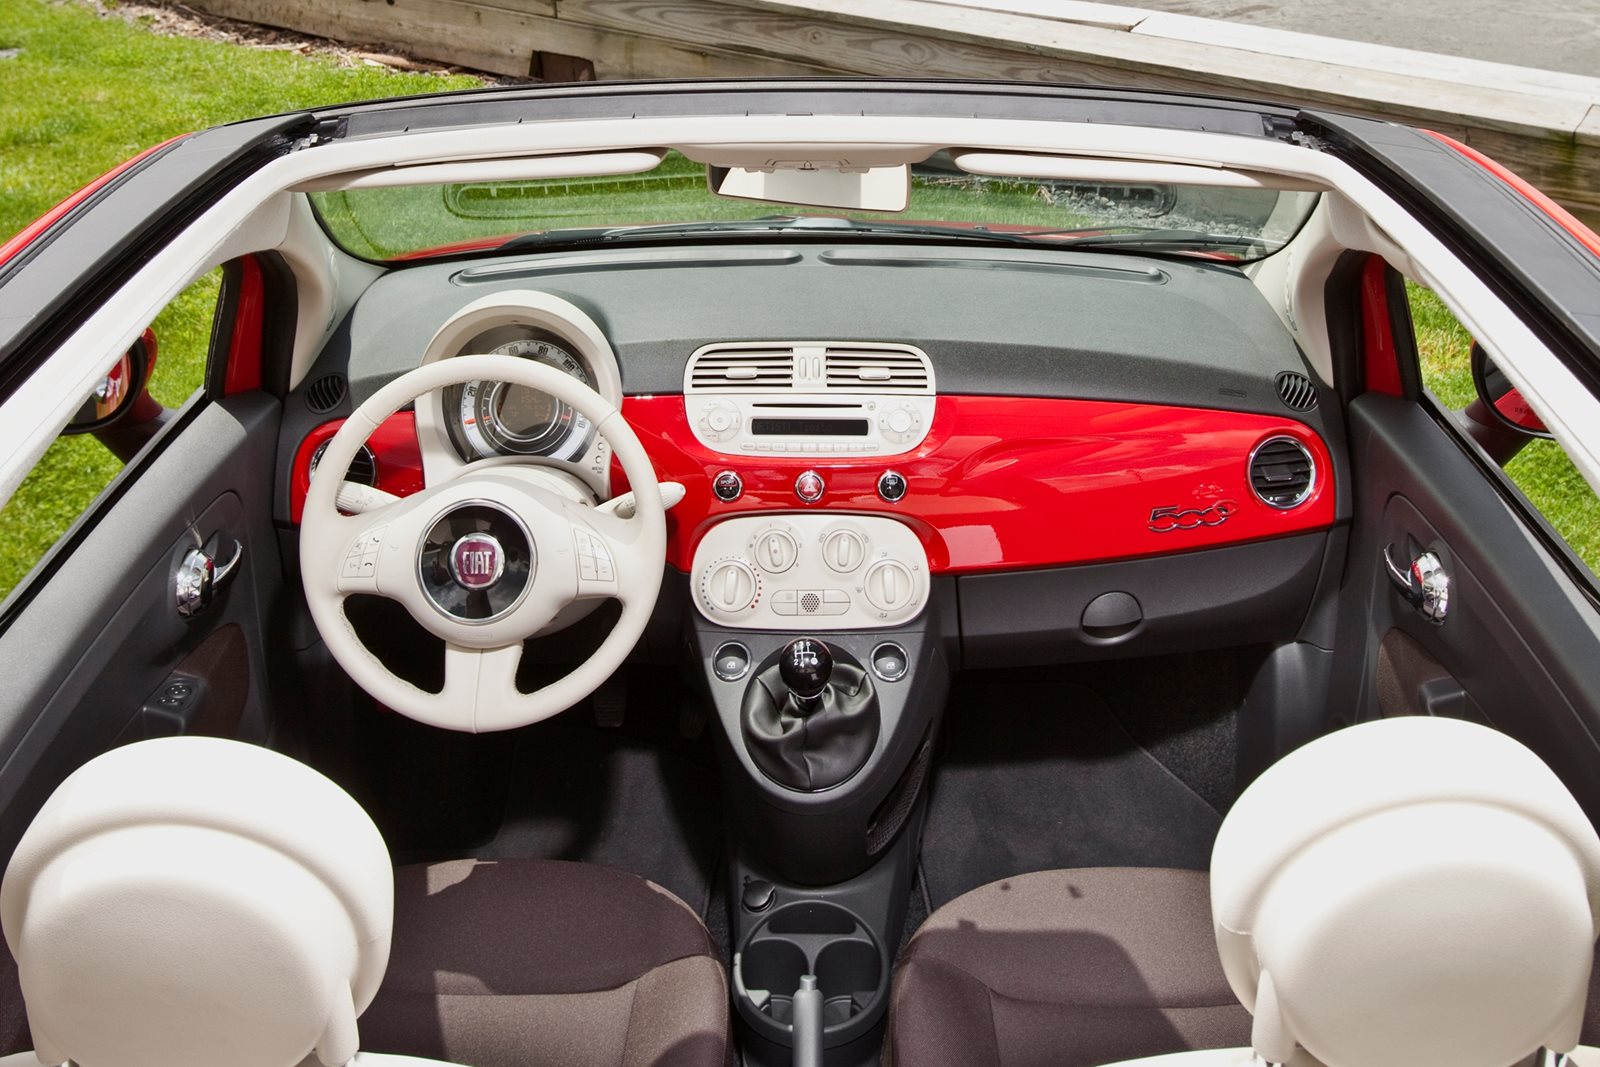 2019 Fiat 500c Review Trims Specs Price New Interior Features